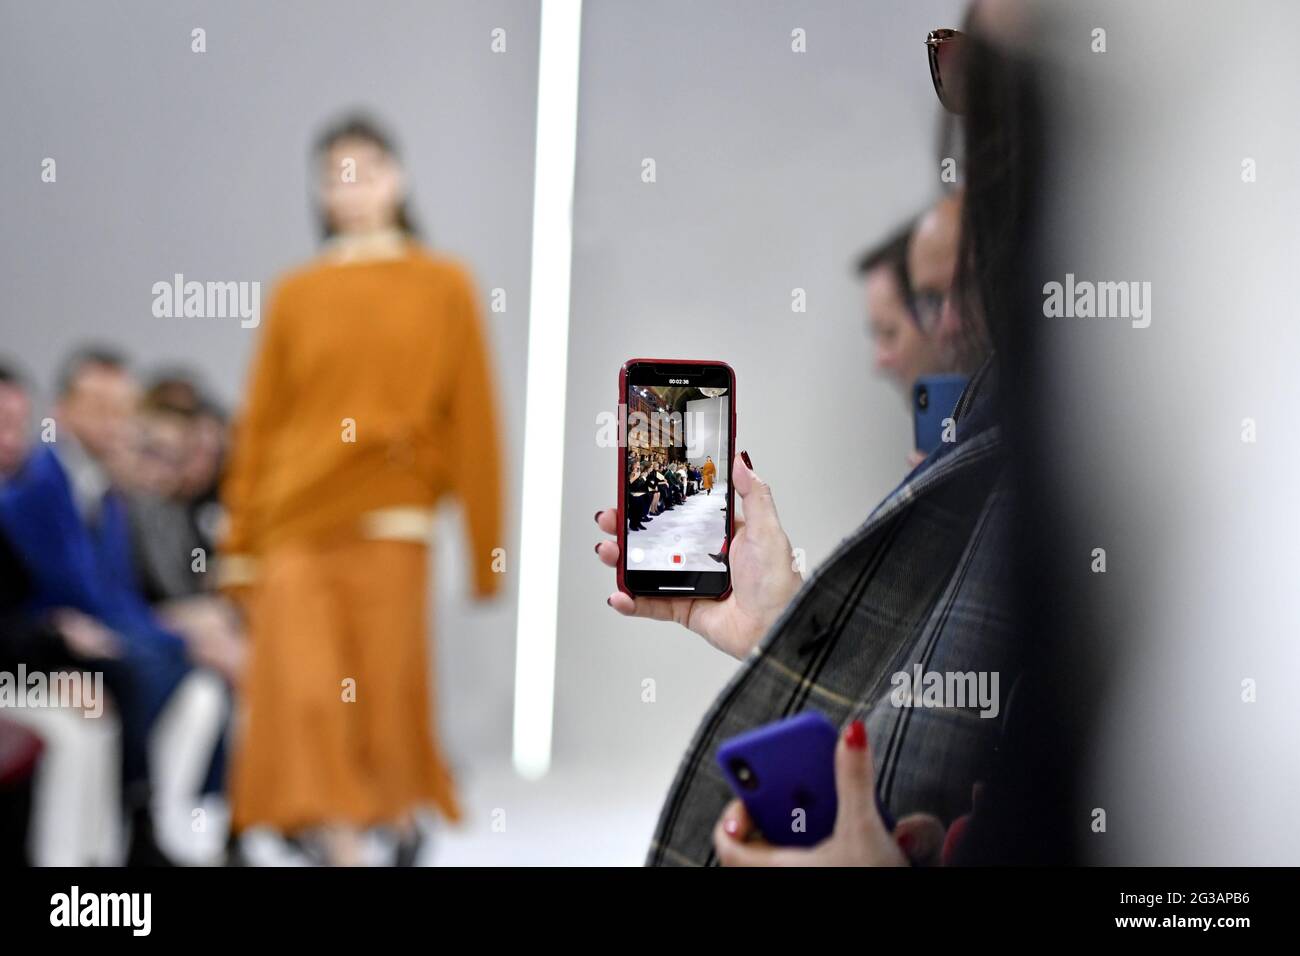 Passerella dei modelli per la ripresa di smartphone, durante la sfilata di moda autunno/inverno di Giada, all'interno della biblioteca Braidense della Pinacoteca di Brera, a Milano. Foto Stock